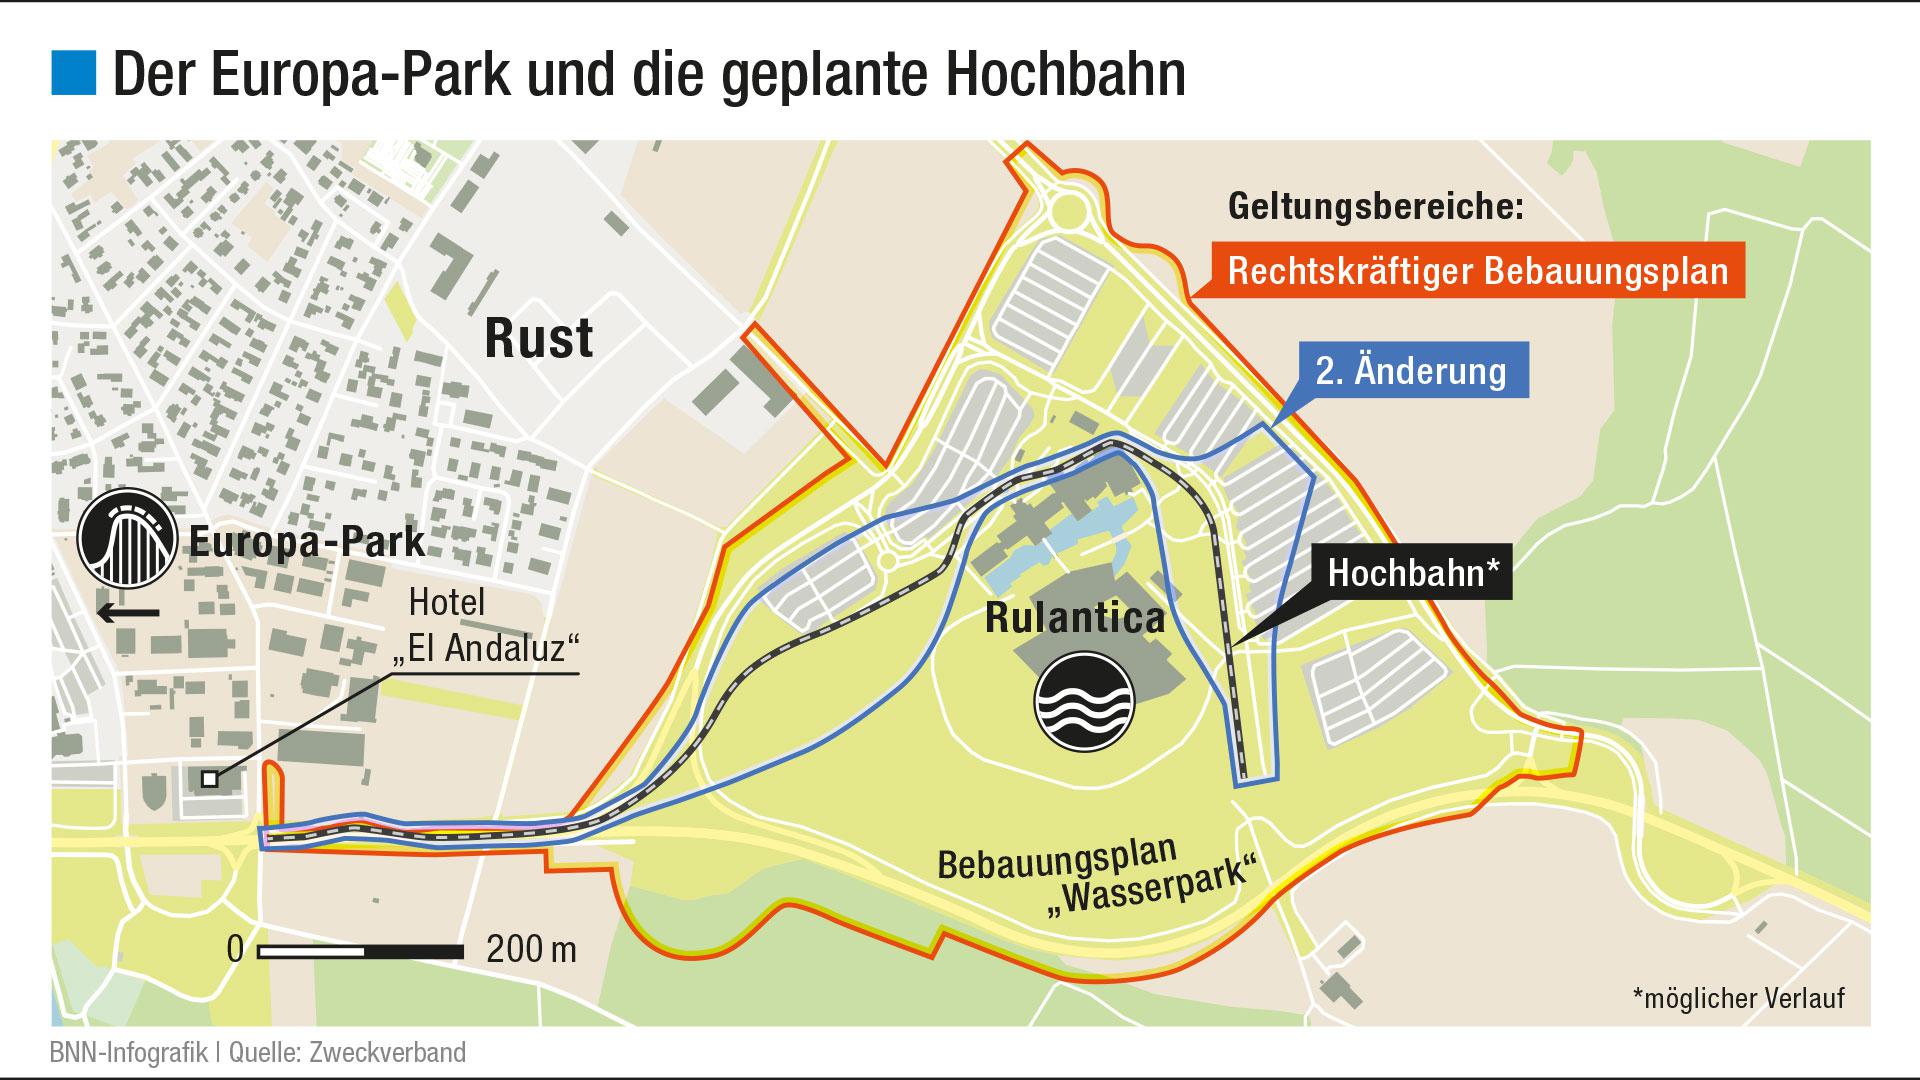 Europa-Park und die geplante Hochbahn